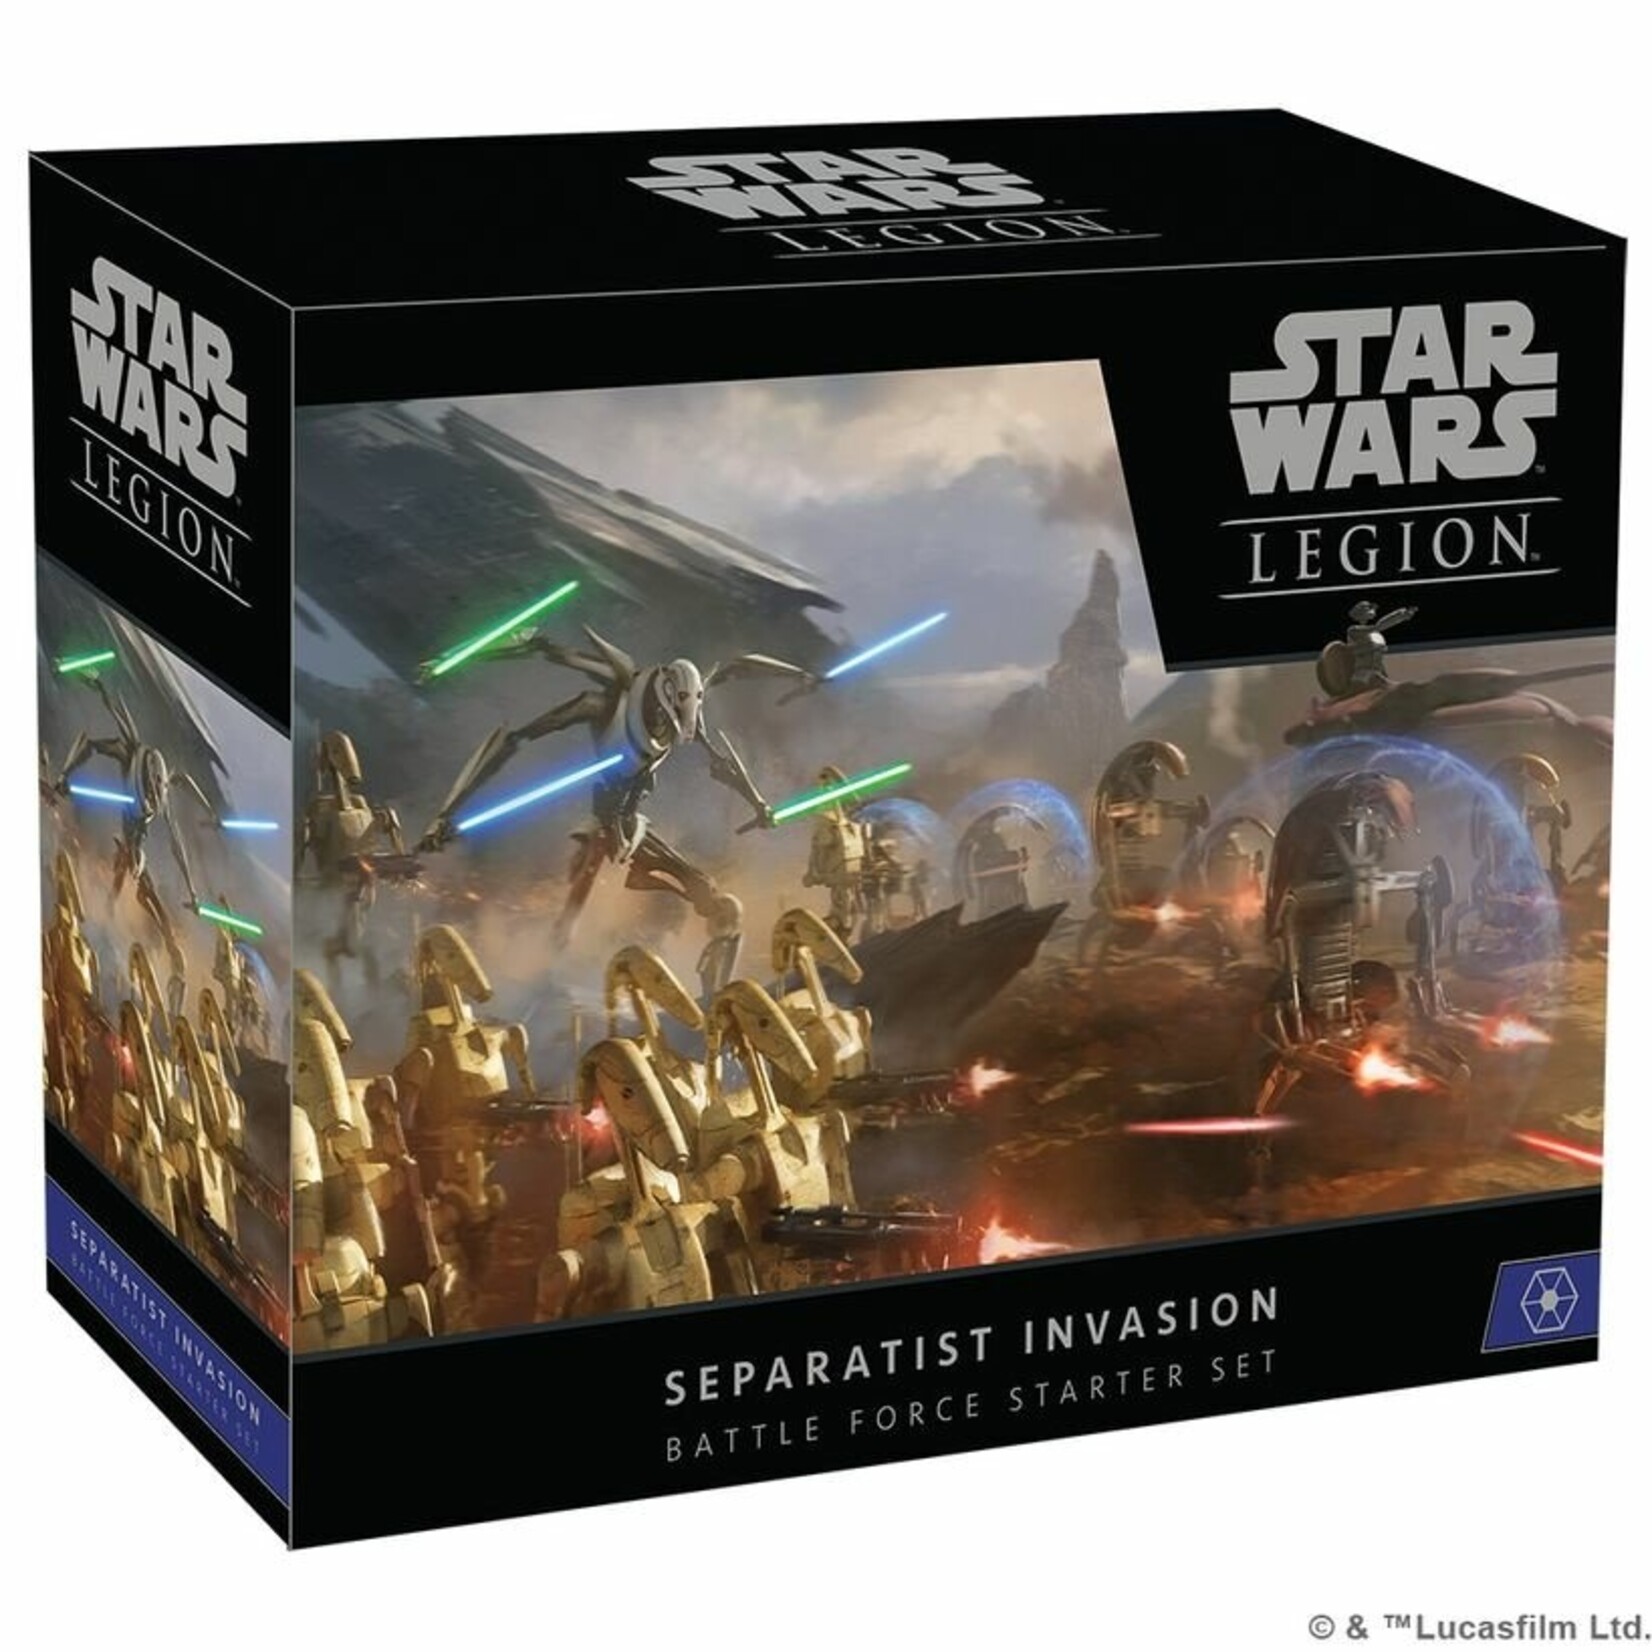 Star wars: Legion Separatist Invasion